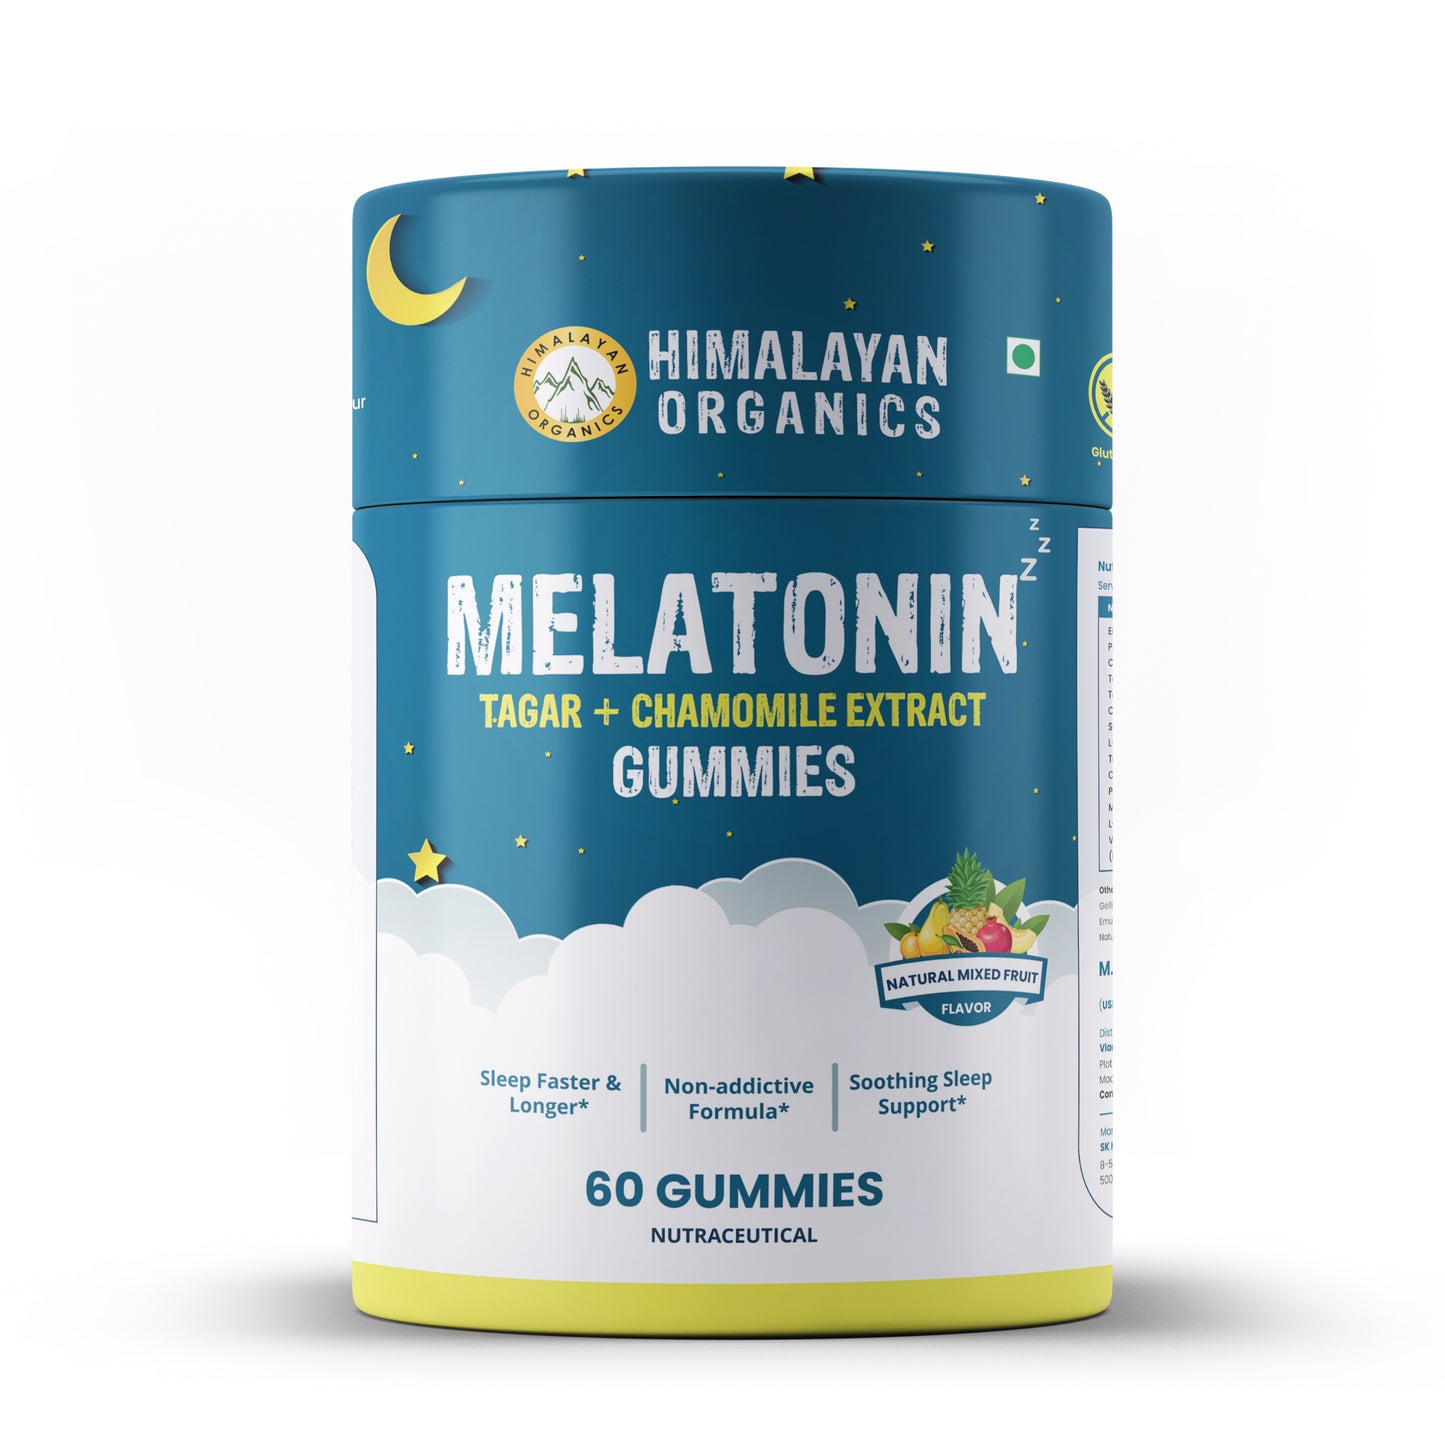 Himalayan Organics Melatonin Tagar + Chamomile Extract Gummies | Sleep Faster & Longer | Non-addictive Formula | Soothing Sleep Support (60 Gummies)